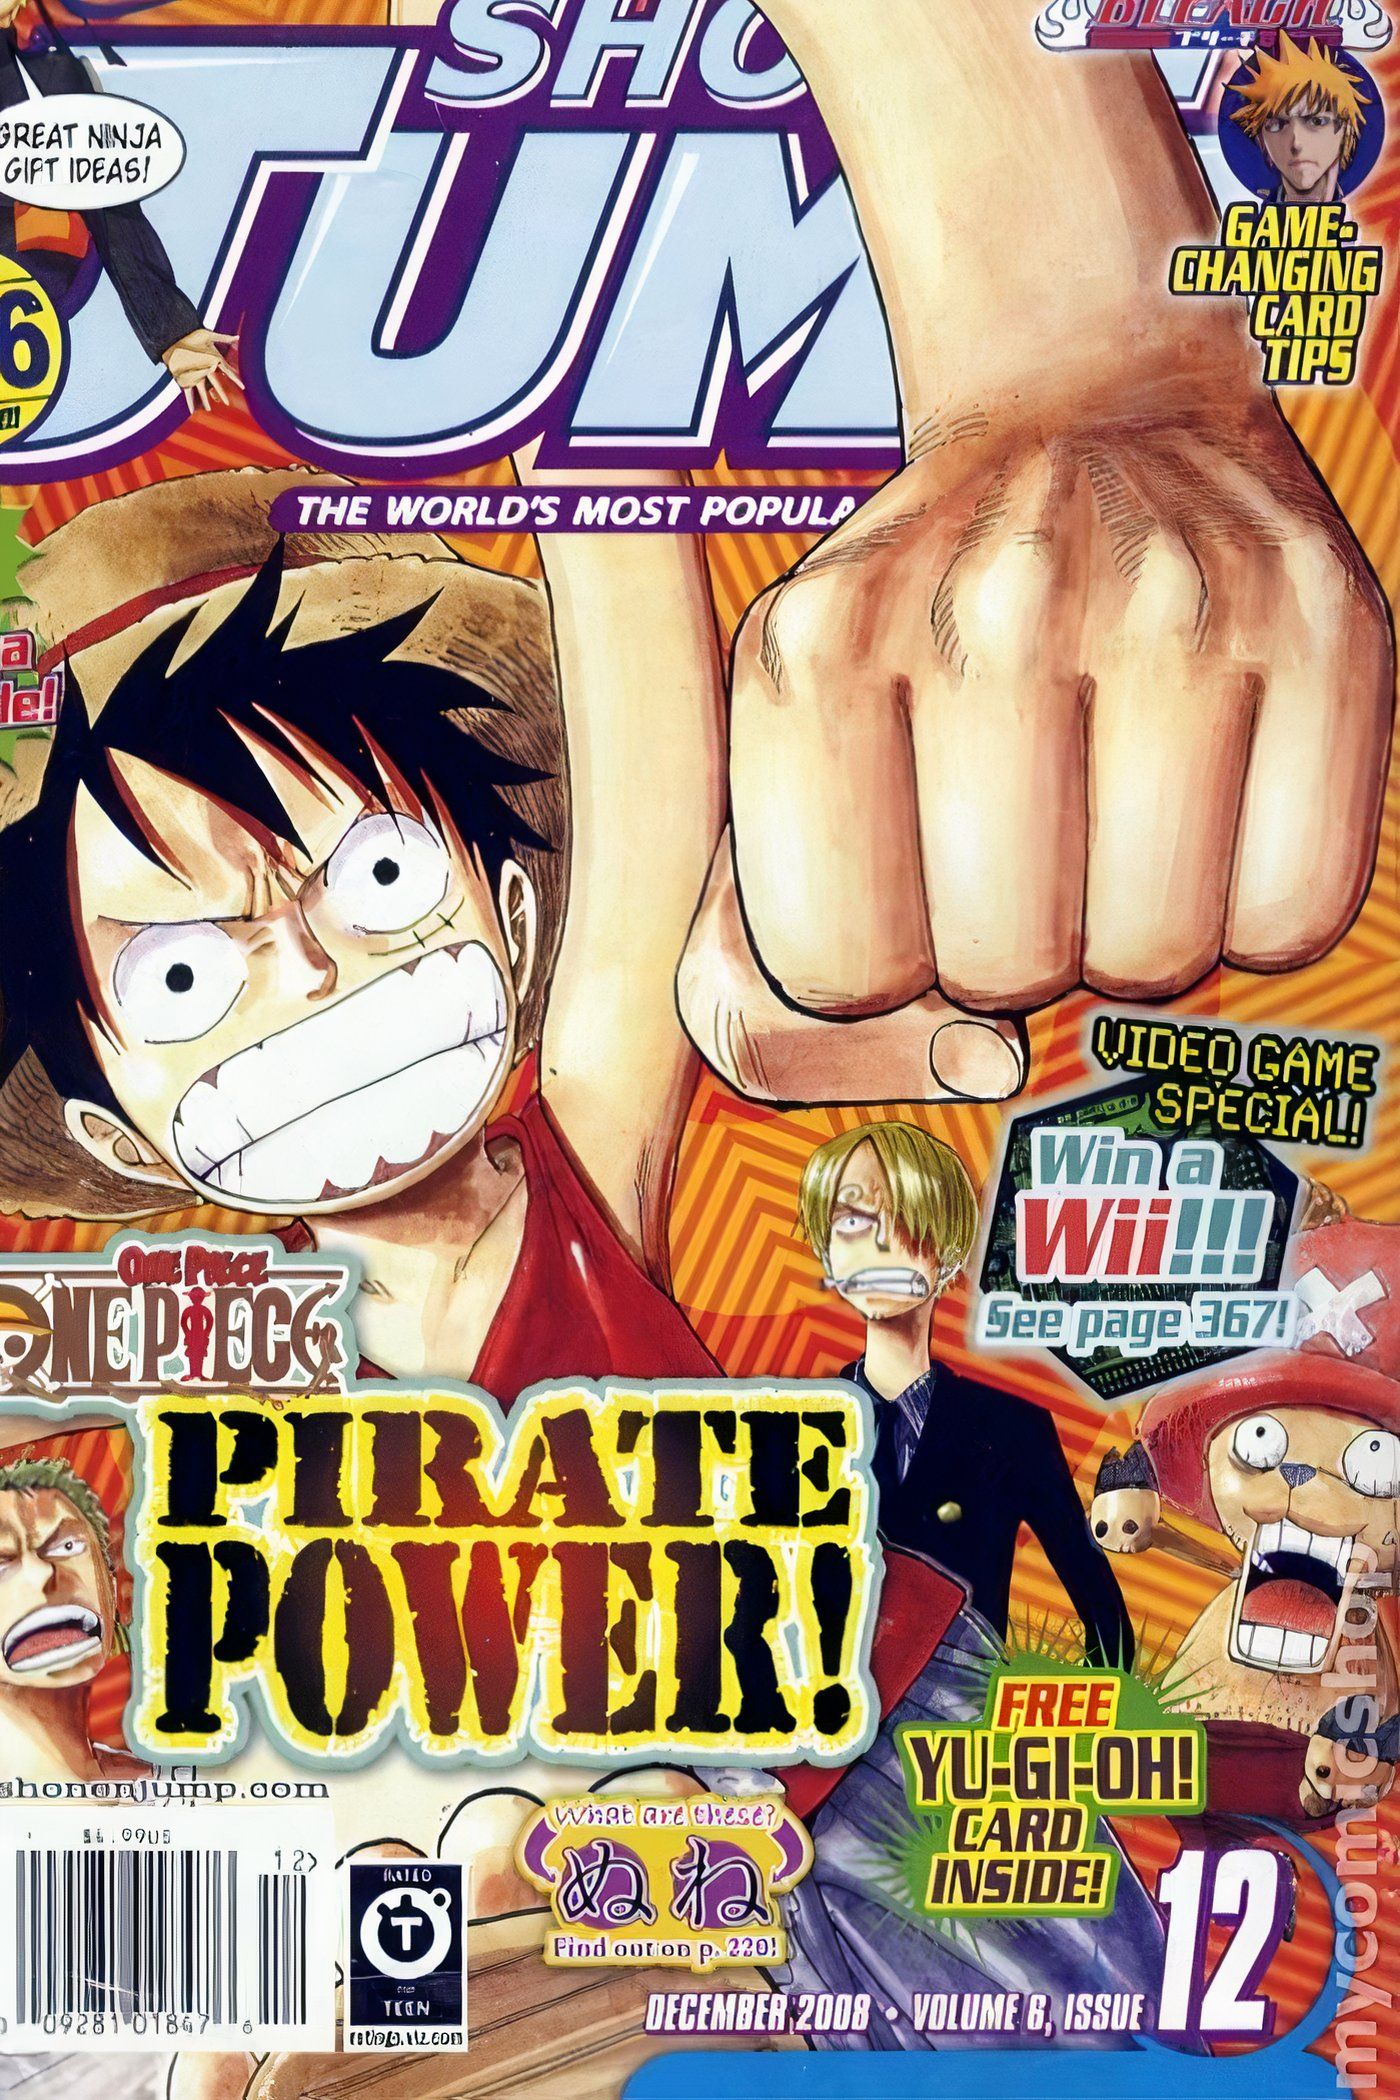 American Weekly Shonen Jump 72 com Luffy, Zoro, Sanji e Chopper de One Piece